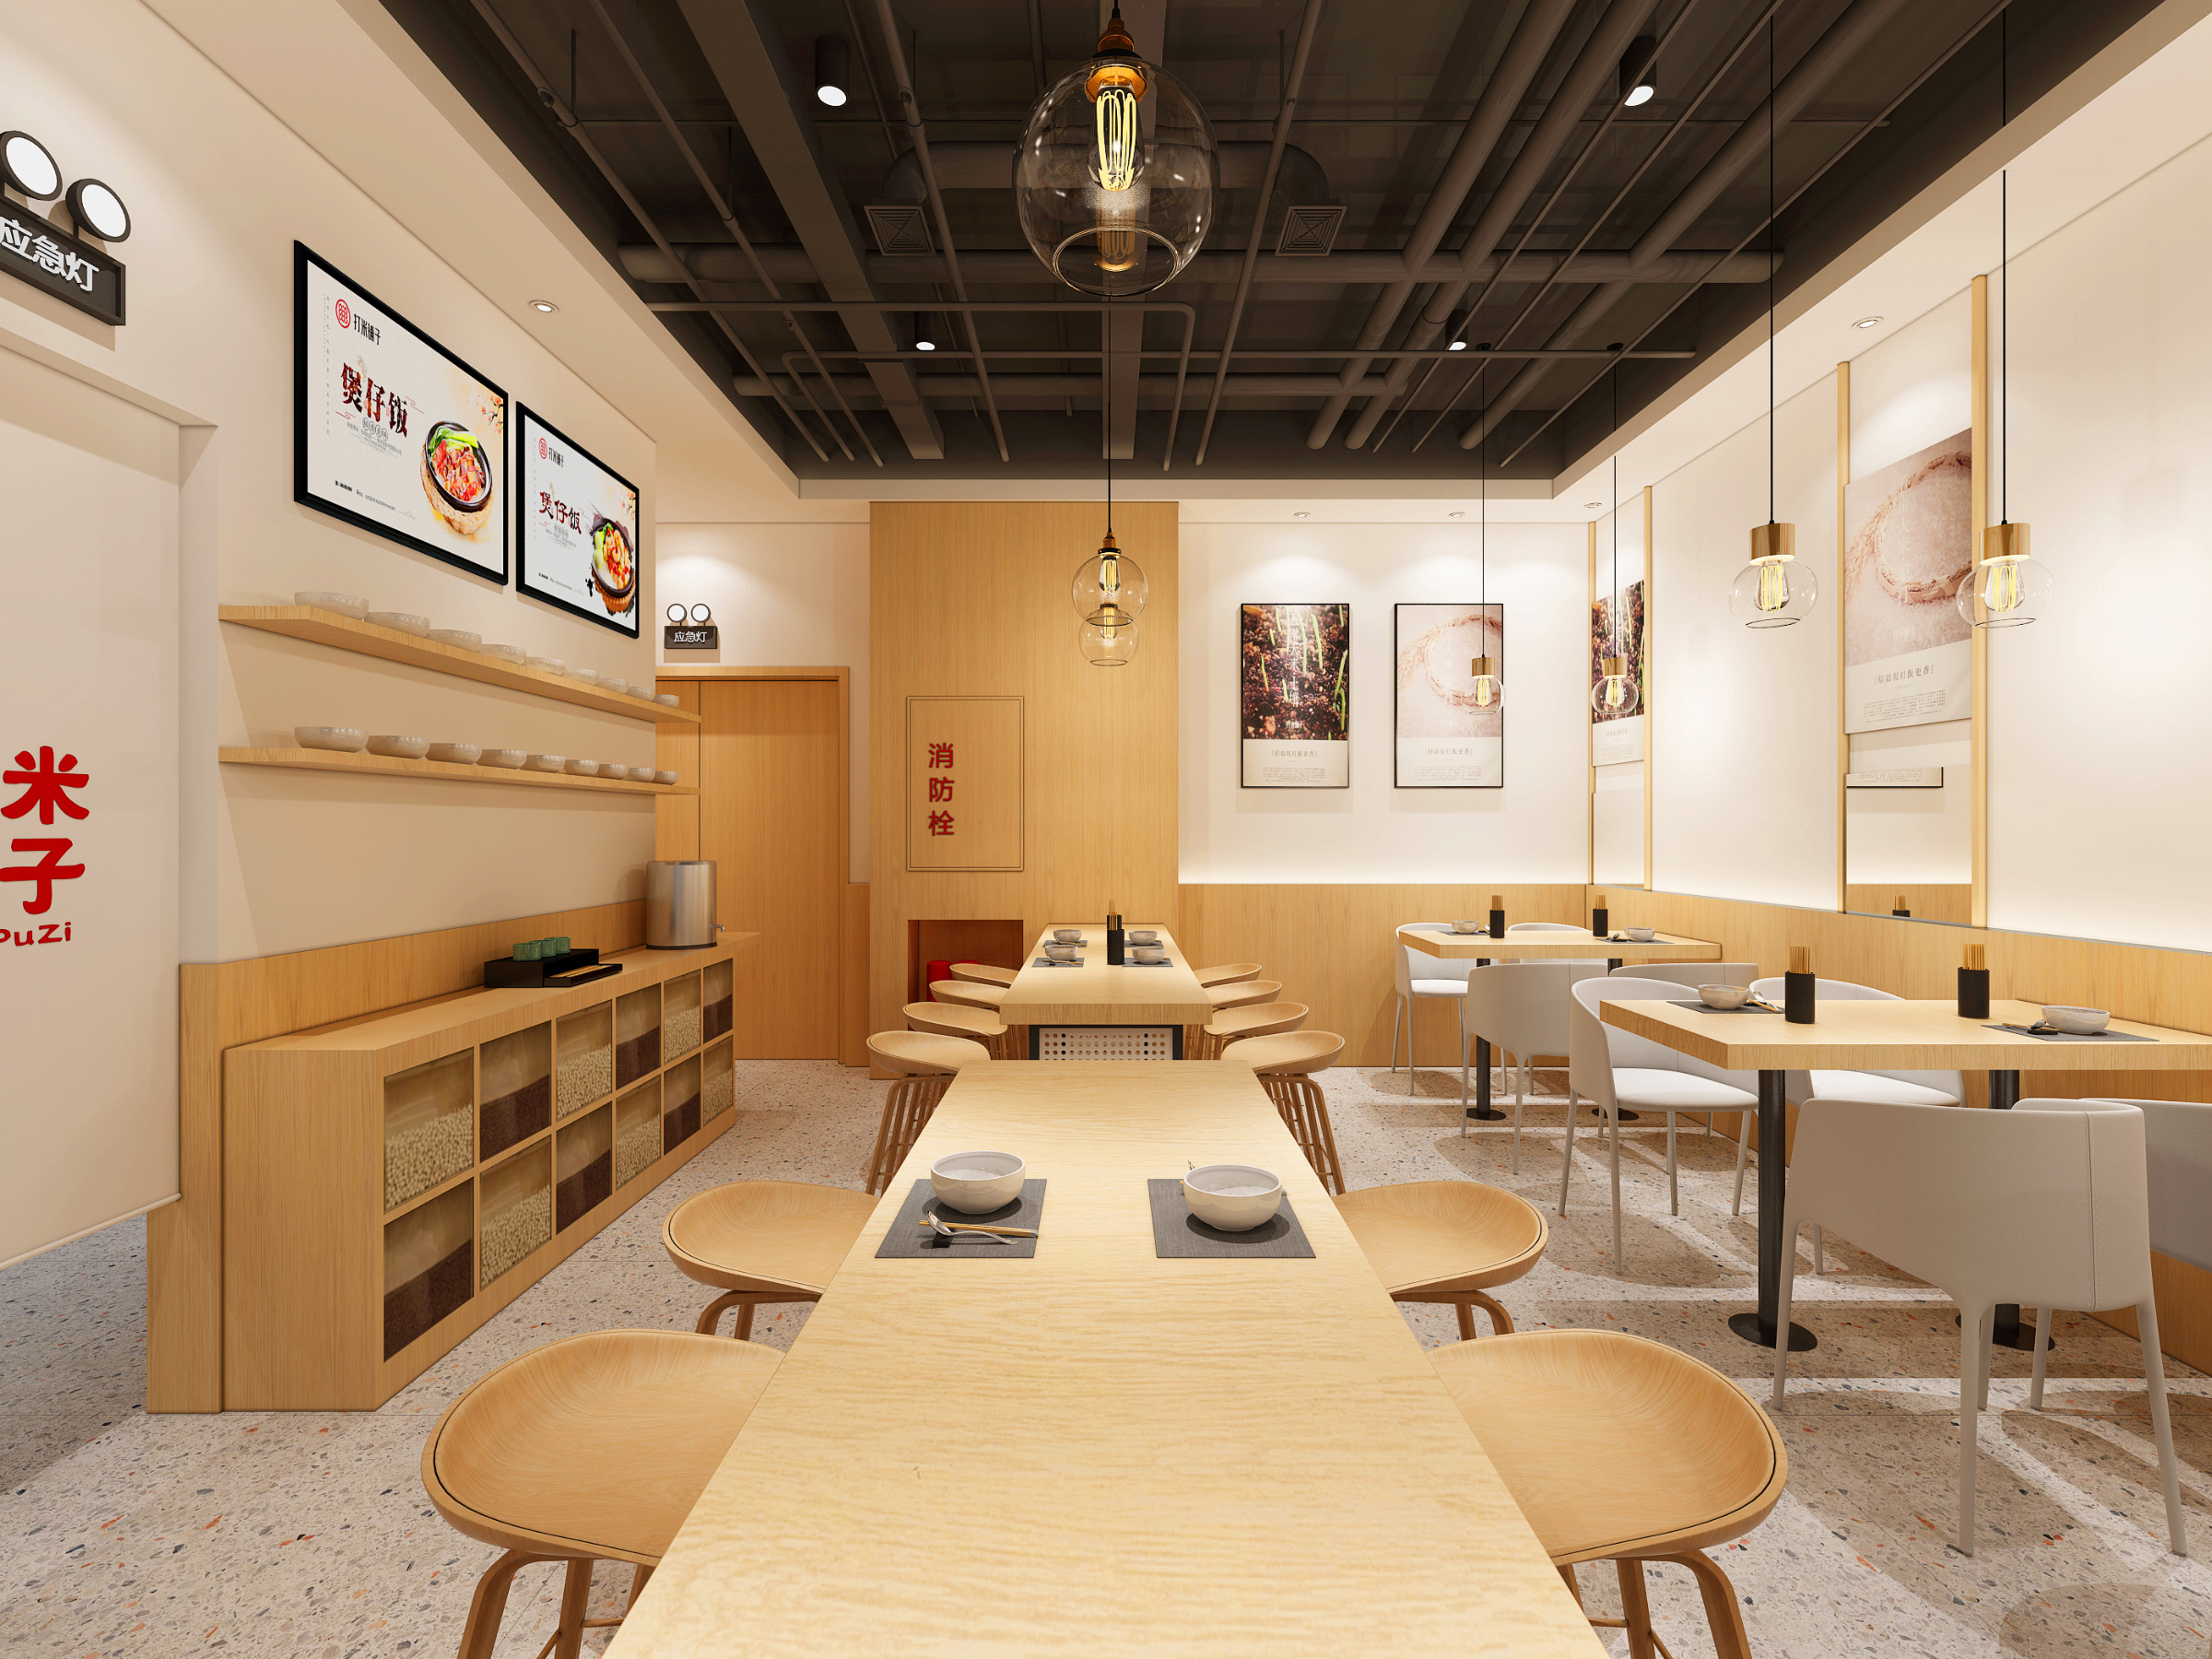 打米铺子品牌形象创意餐厅设计